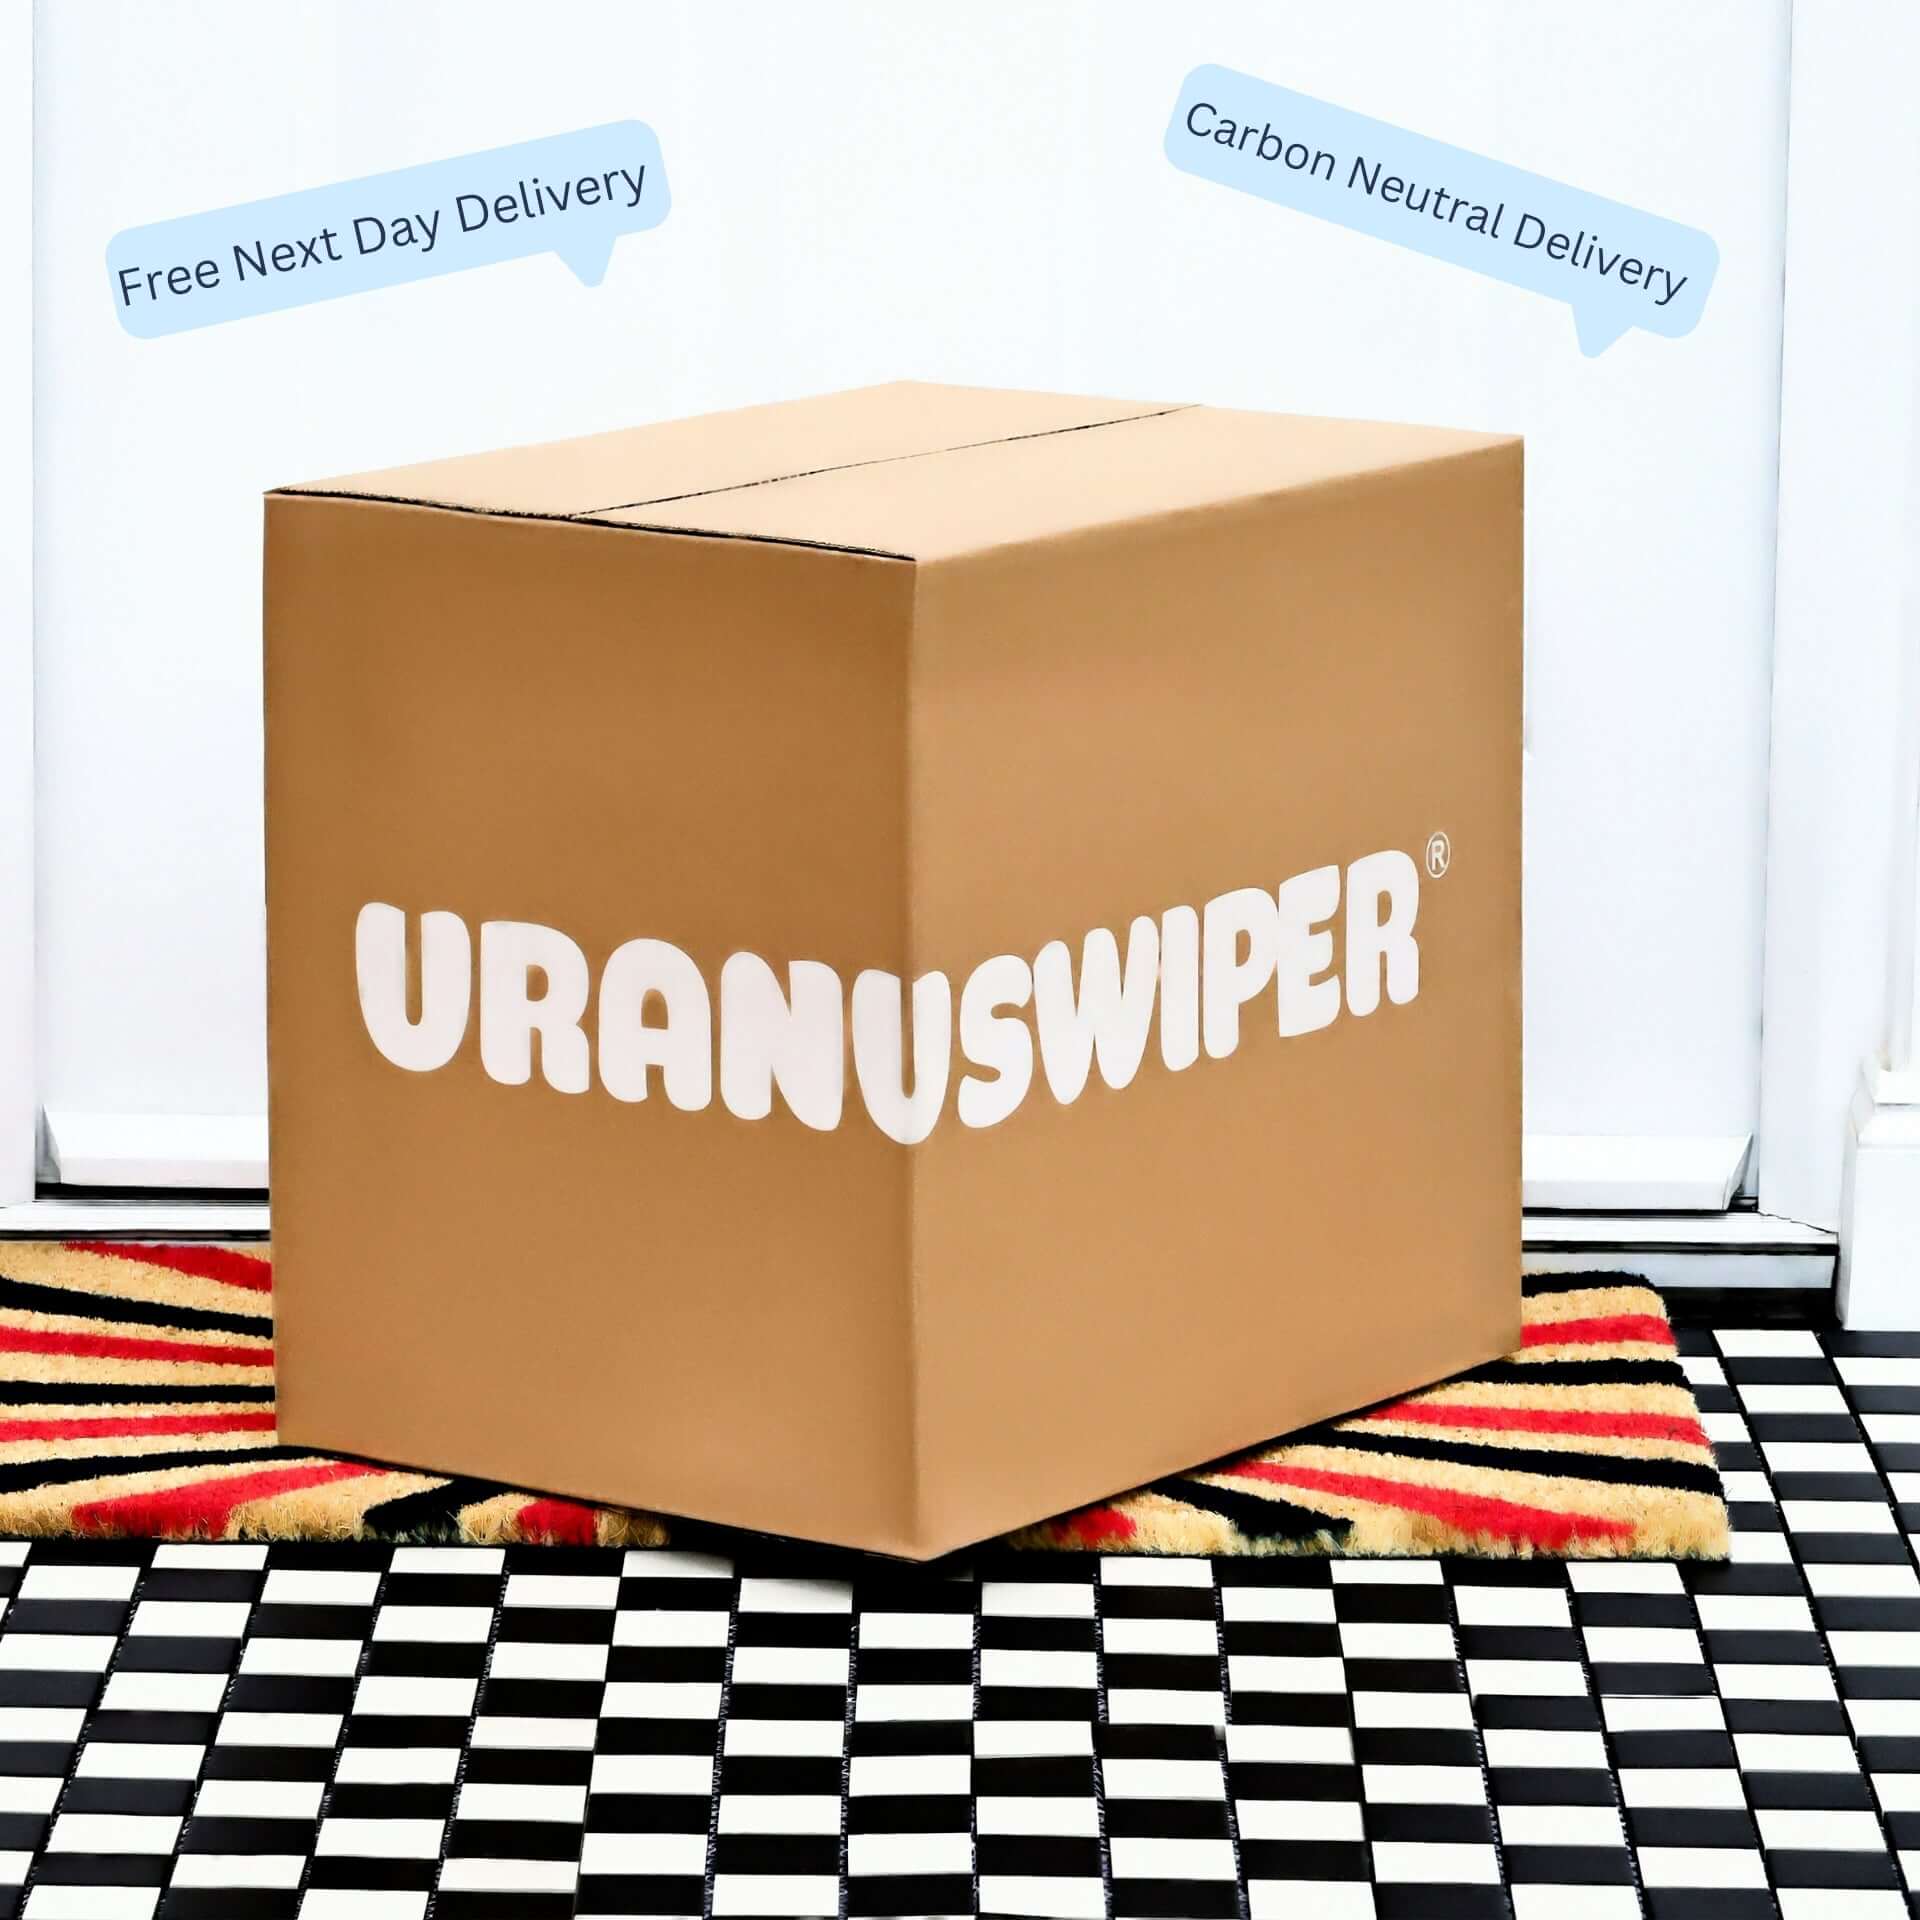 Uranus Wiper toilet roll carton delivery in front of door porch